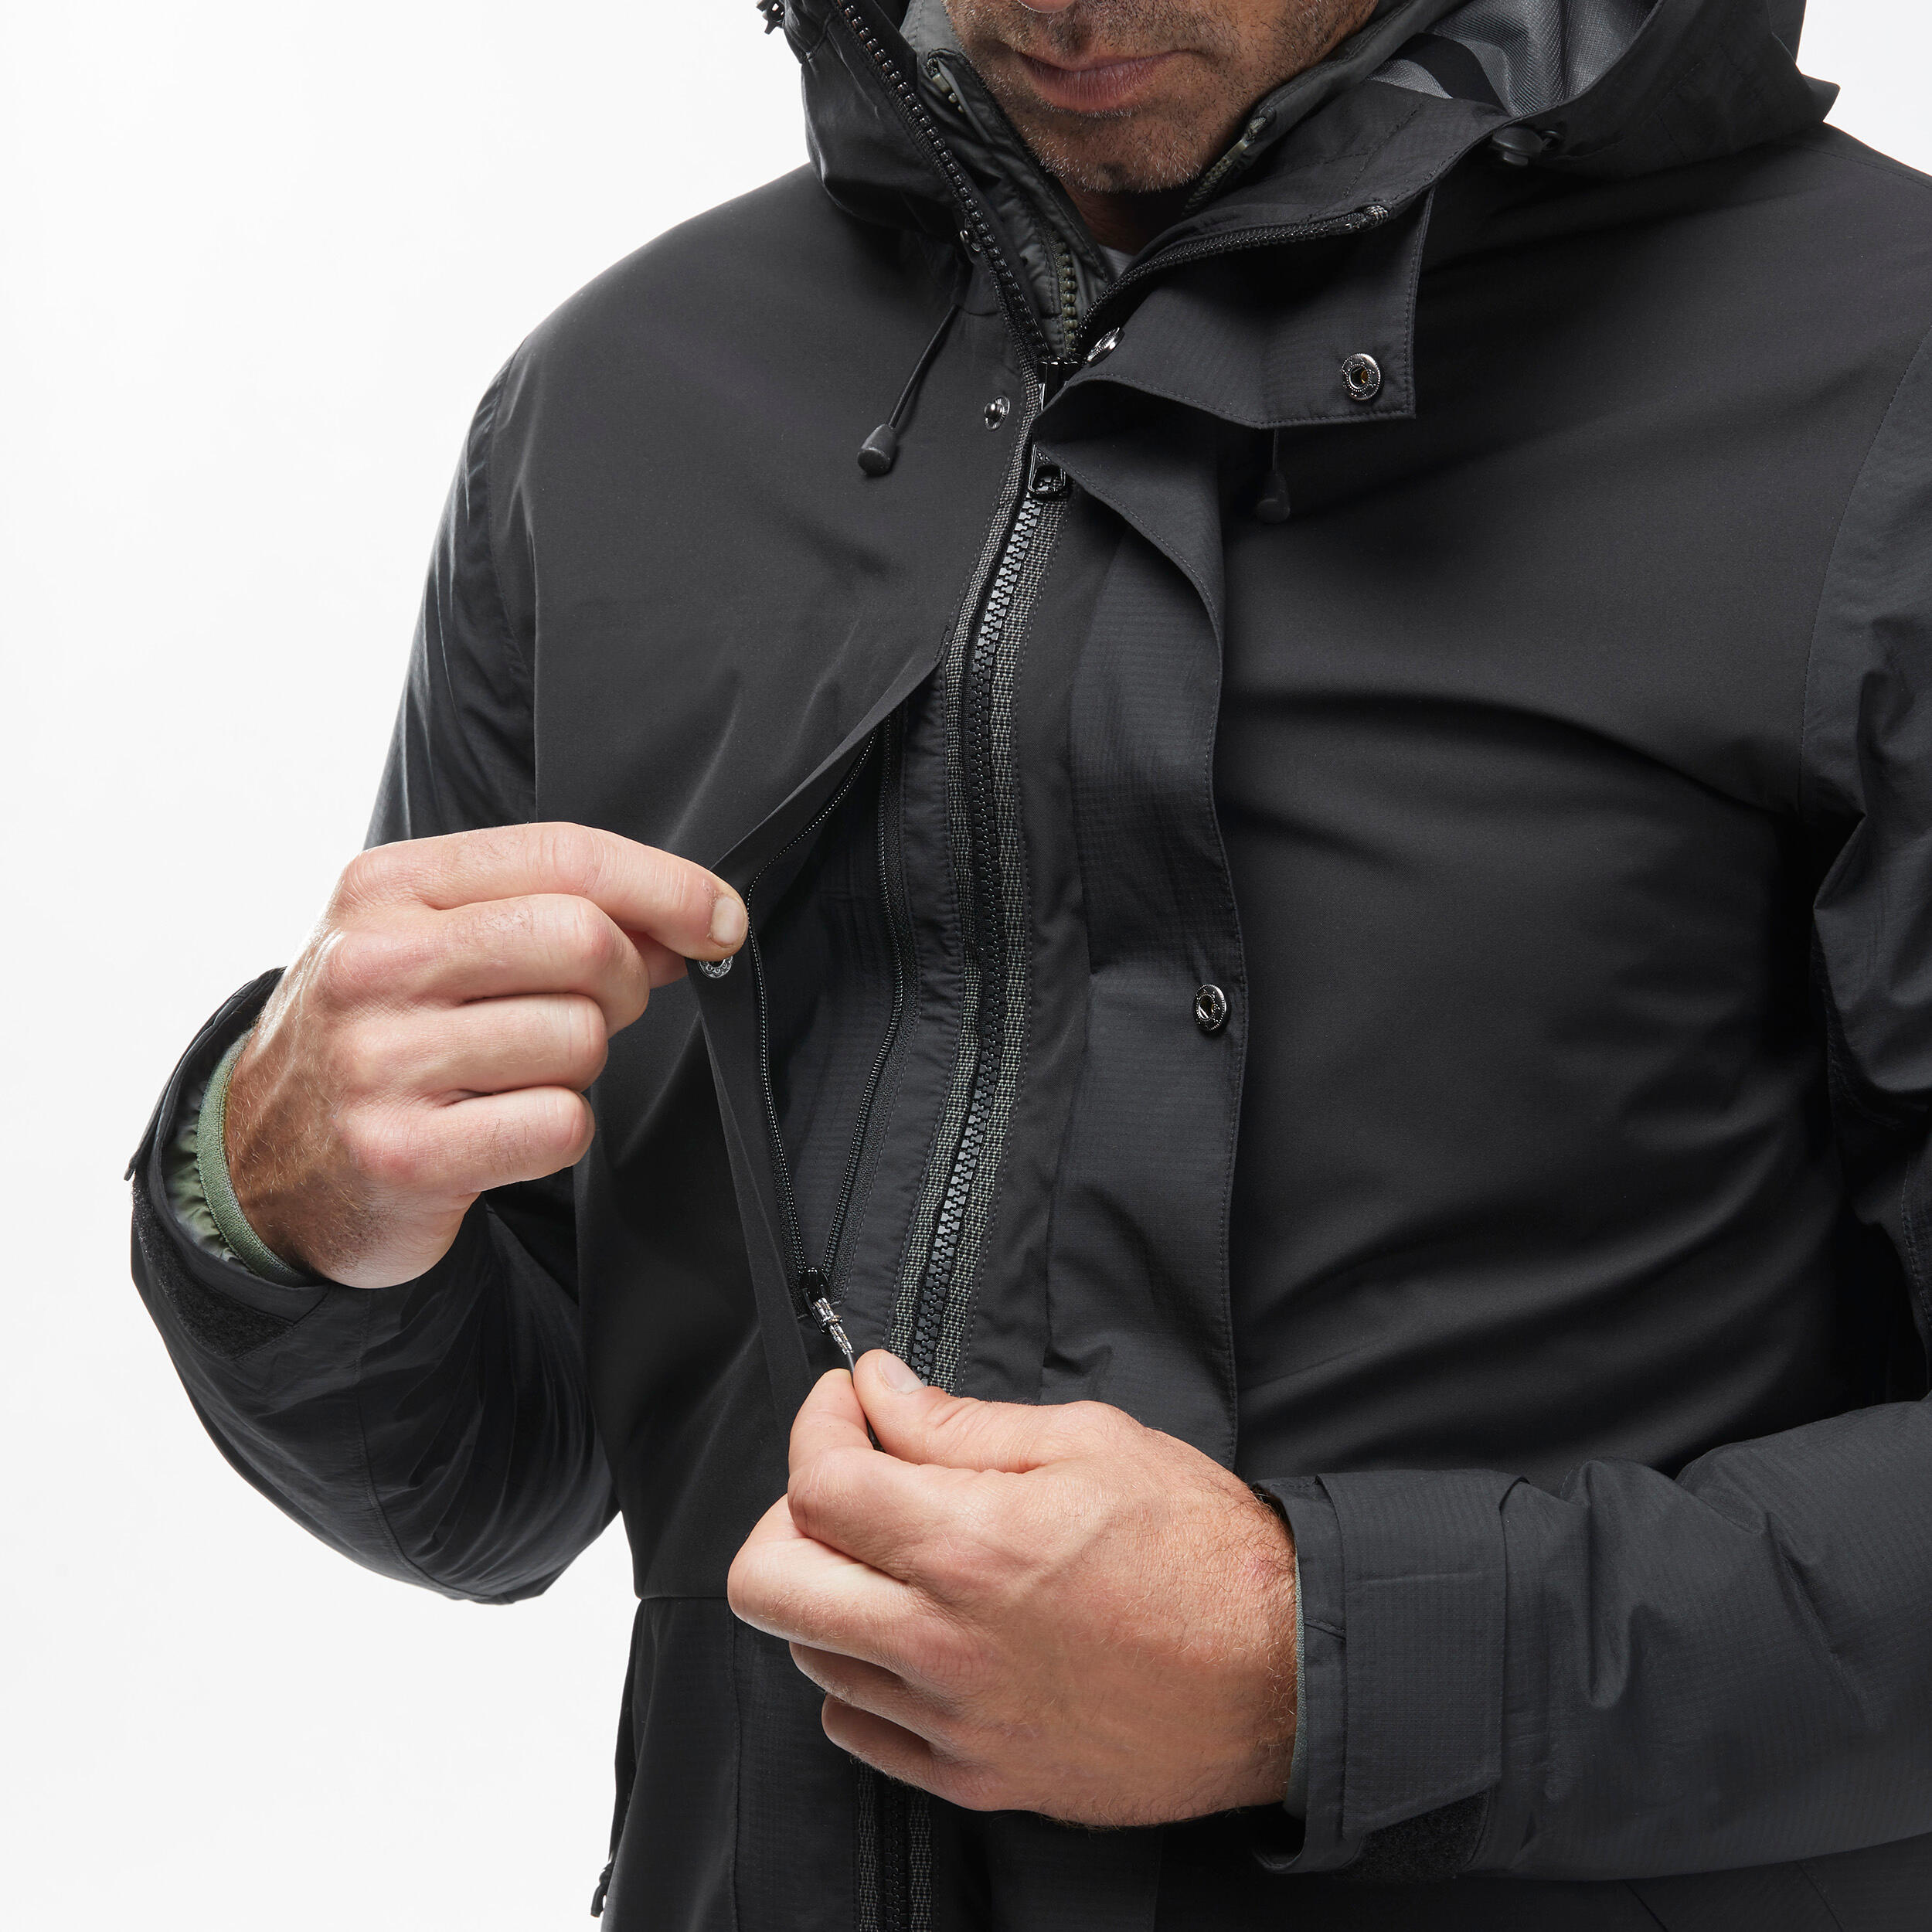 Men’s 3-in-1 Waterproof Travel Trekking Jacket Travel 900 Compact -10°C - Black  11/18